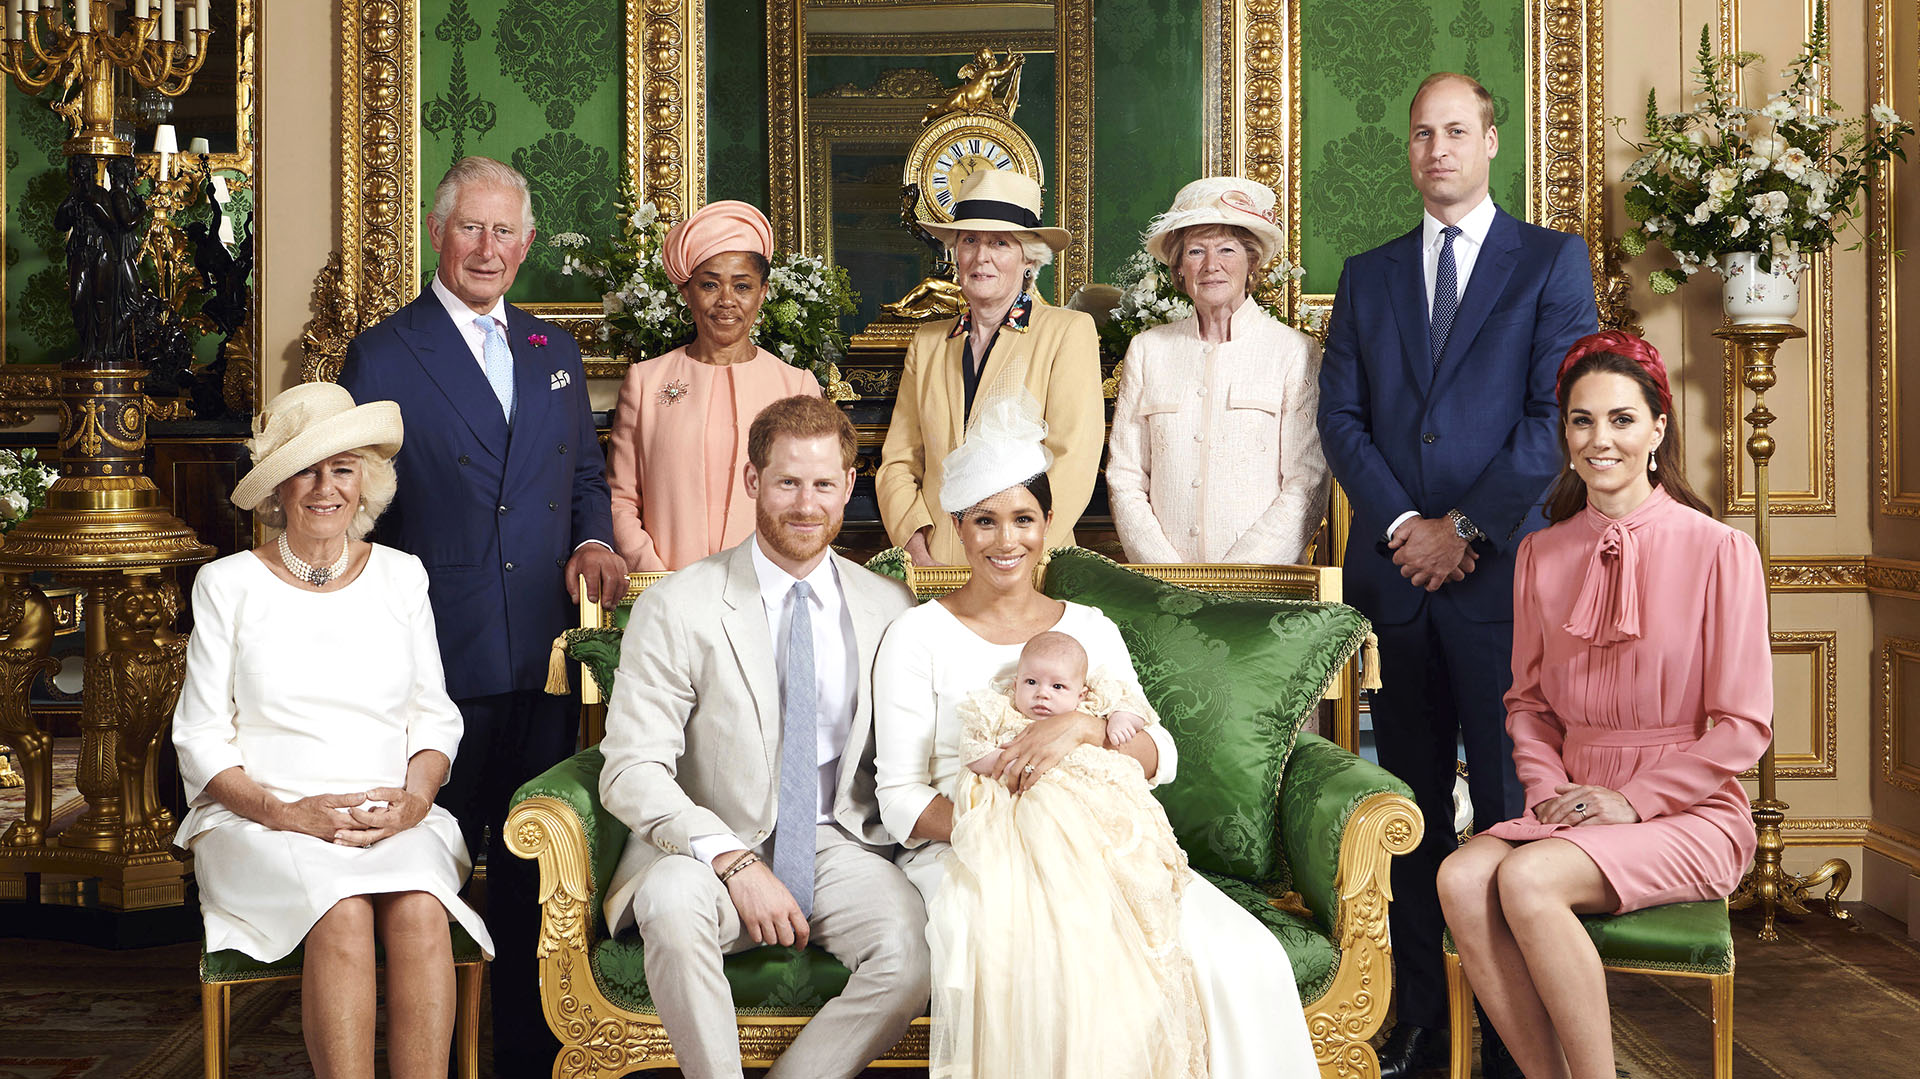 El hijo de Harry, Archie, nunca se convertirá en príncipe bajo el plan de su abuelo para una monarquía reducida. Carlos de Inglaterra planea una profunda reestructuración de la familia real británica cuando llegue al trono (AP)